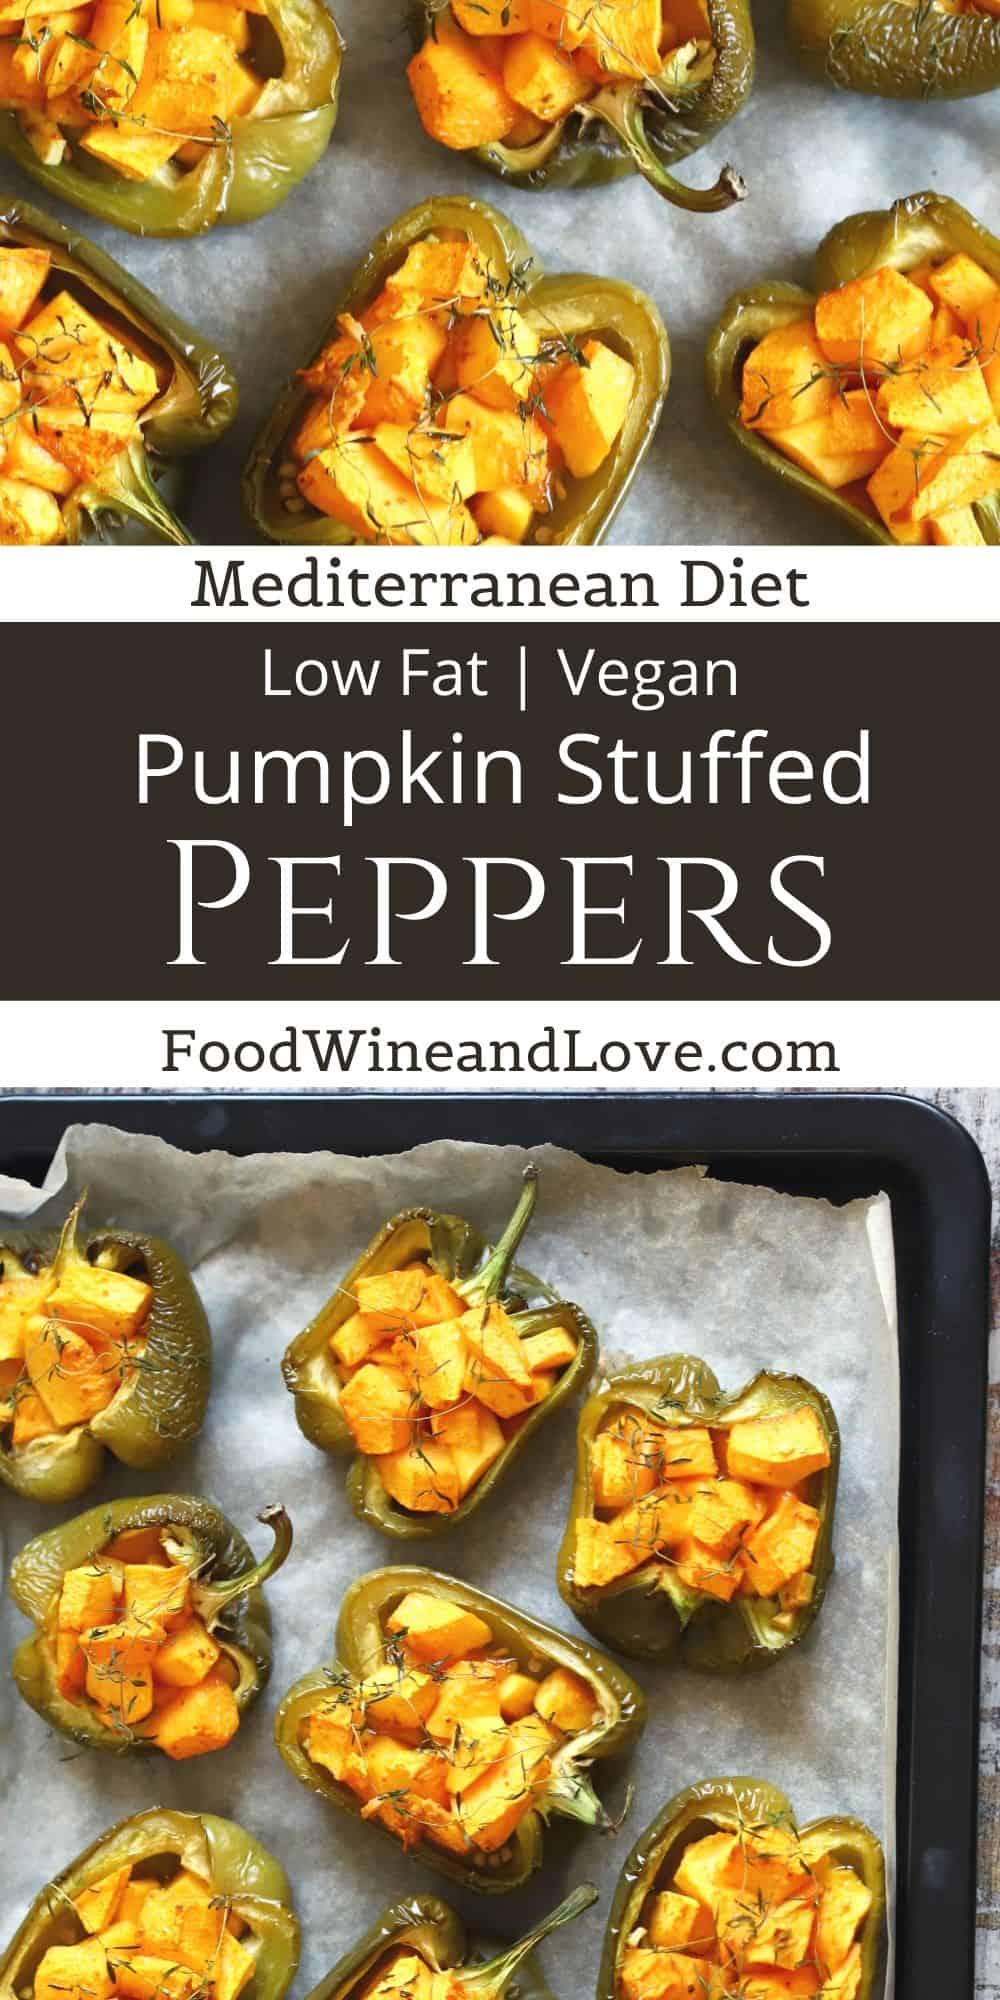 Vegan Pumpkin Stuffed Peppers